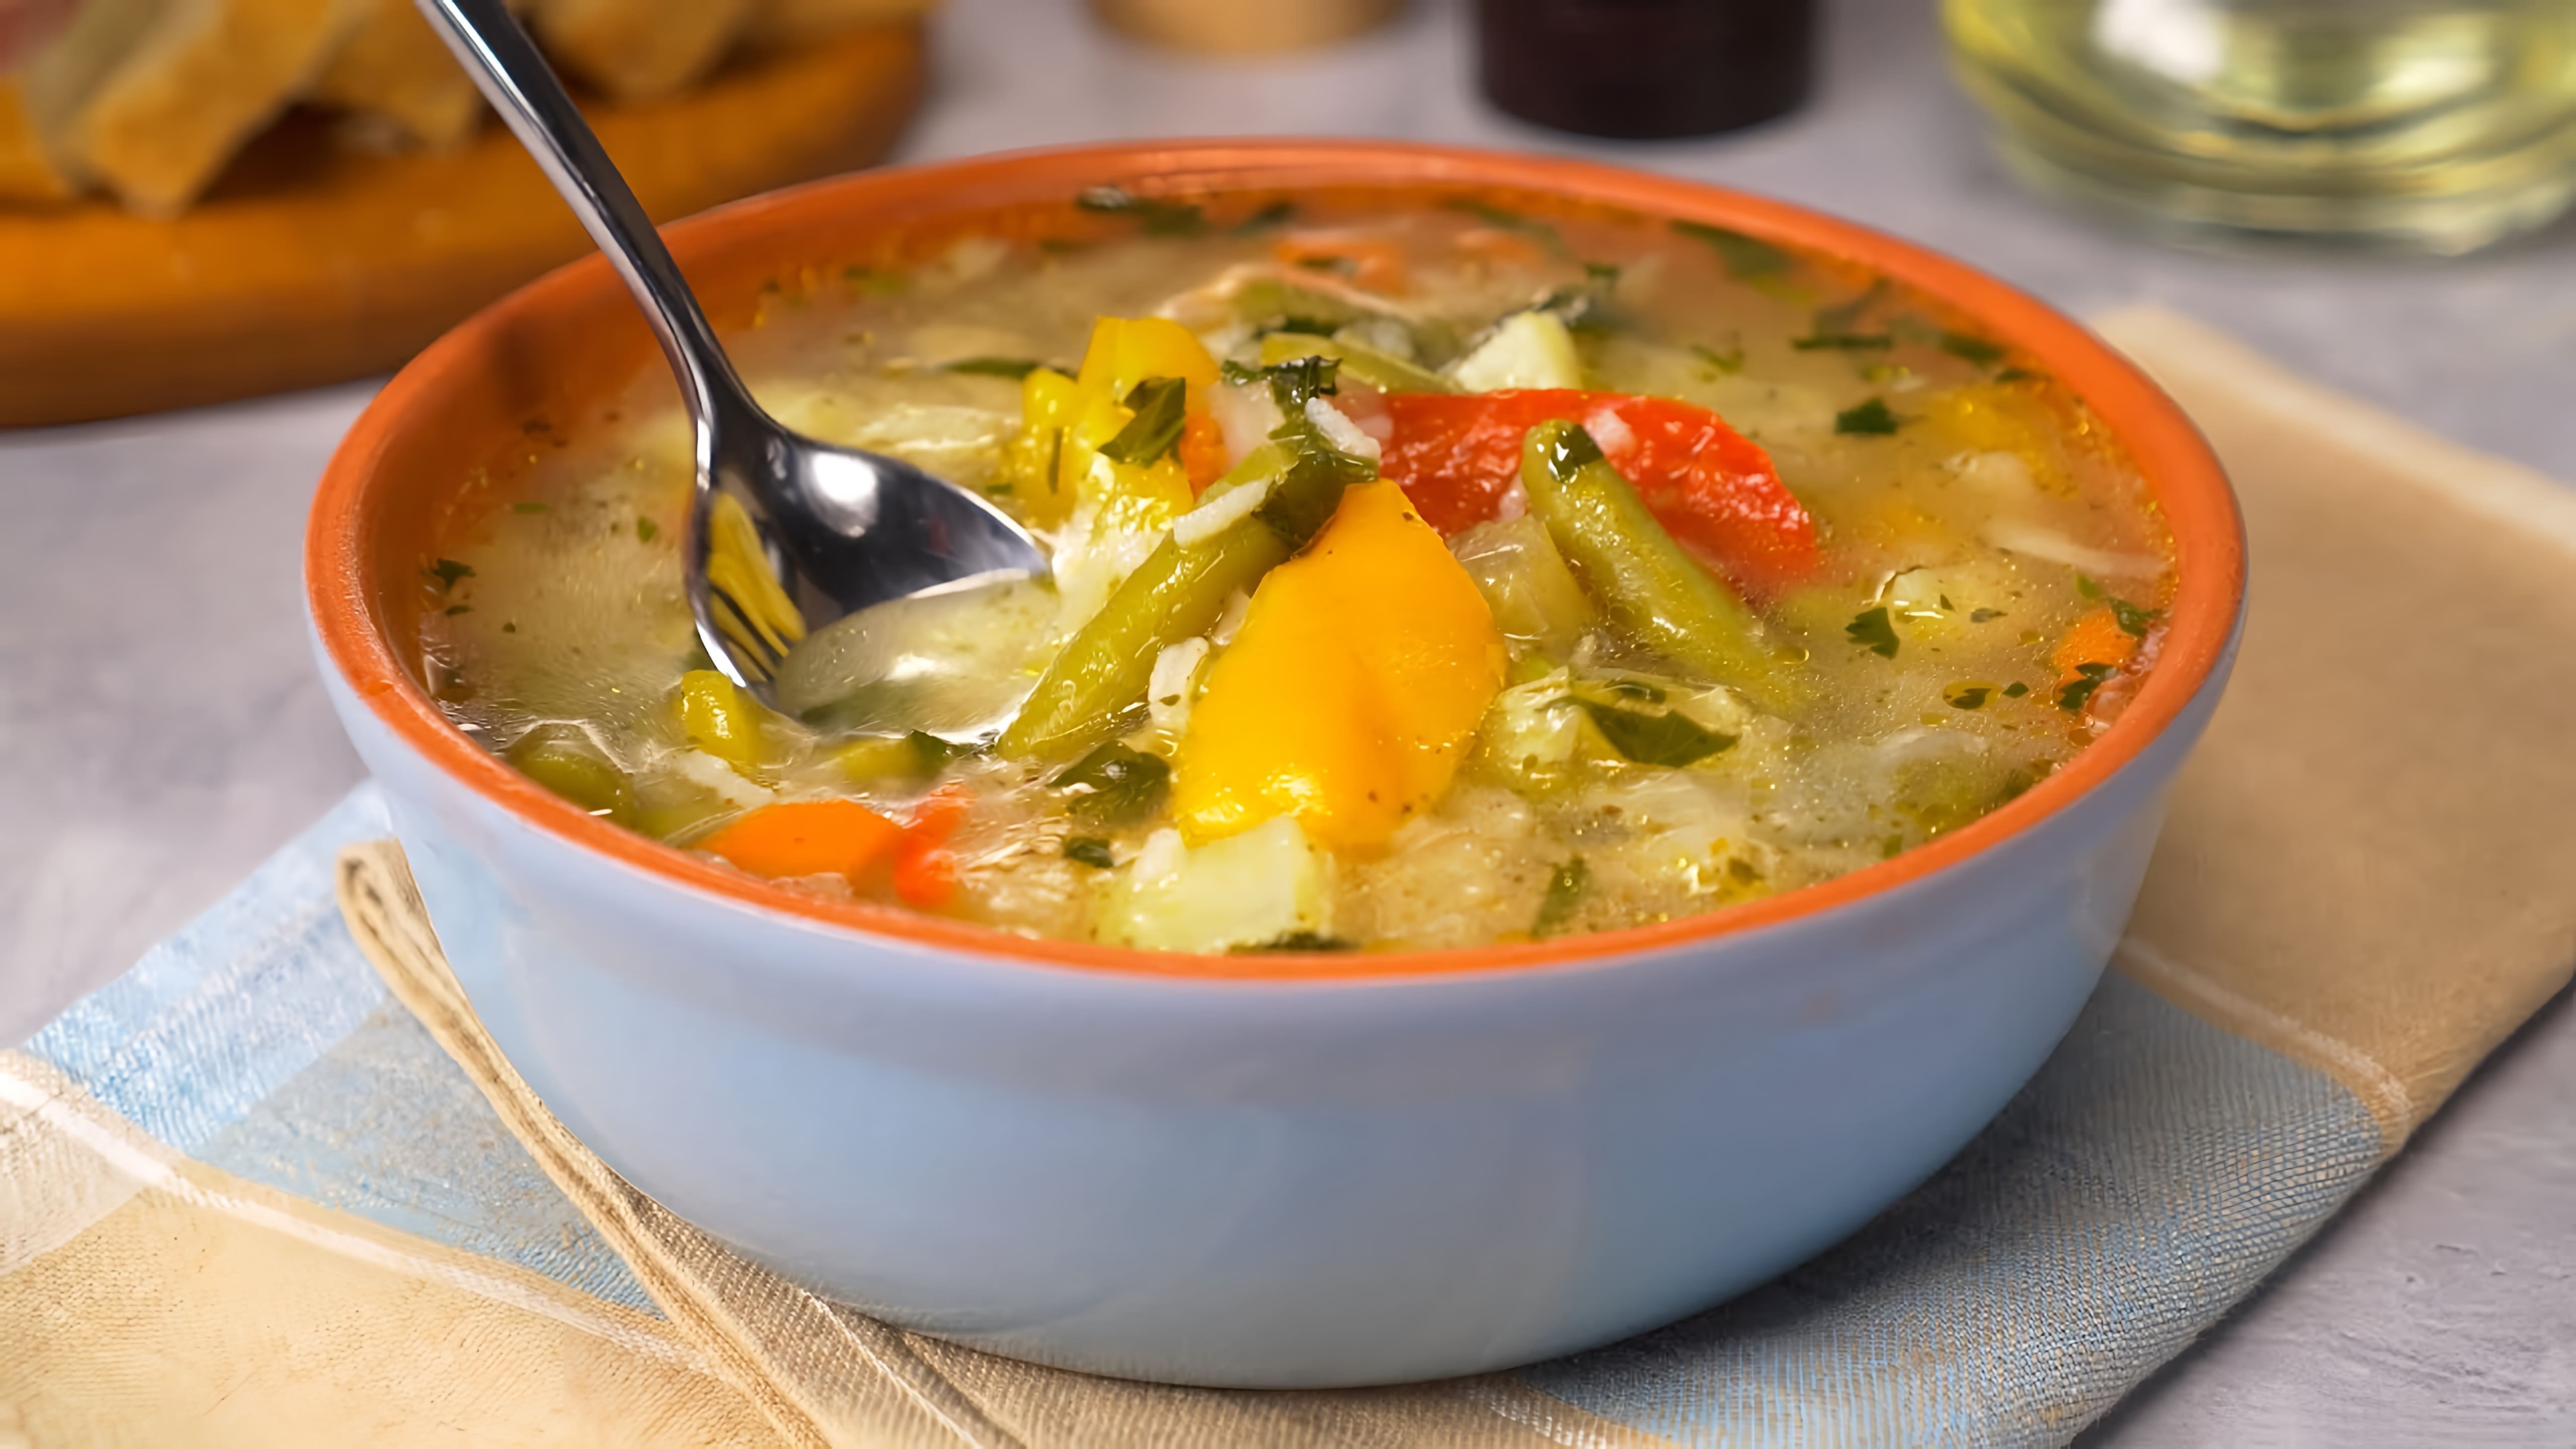 В этом видео демонстрируется рецепт приготовления супа из замороженных овощей